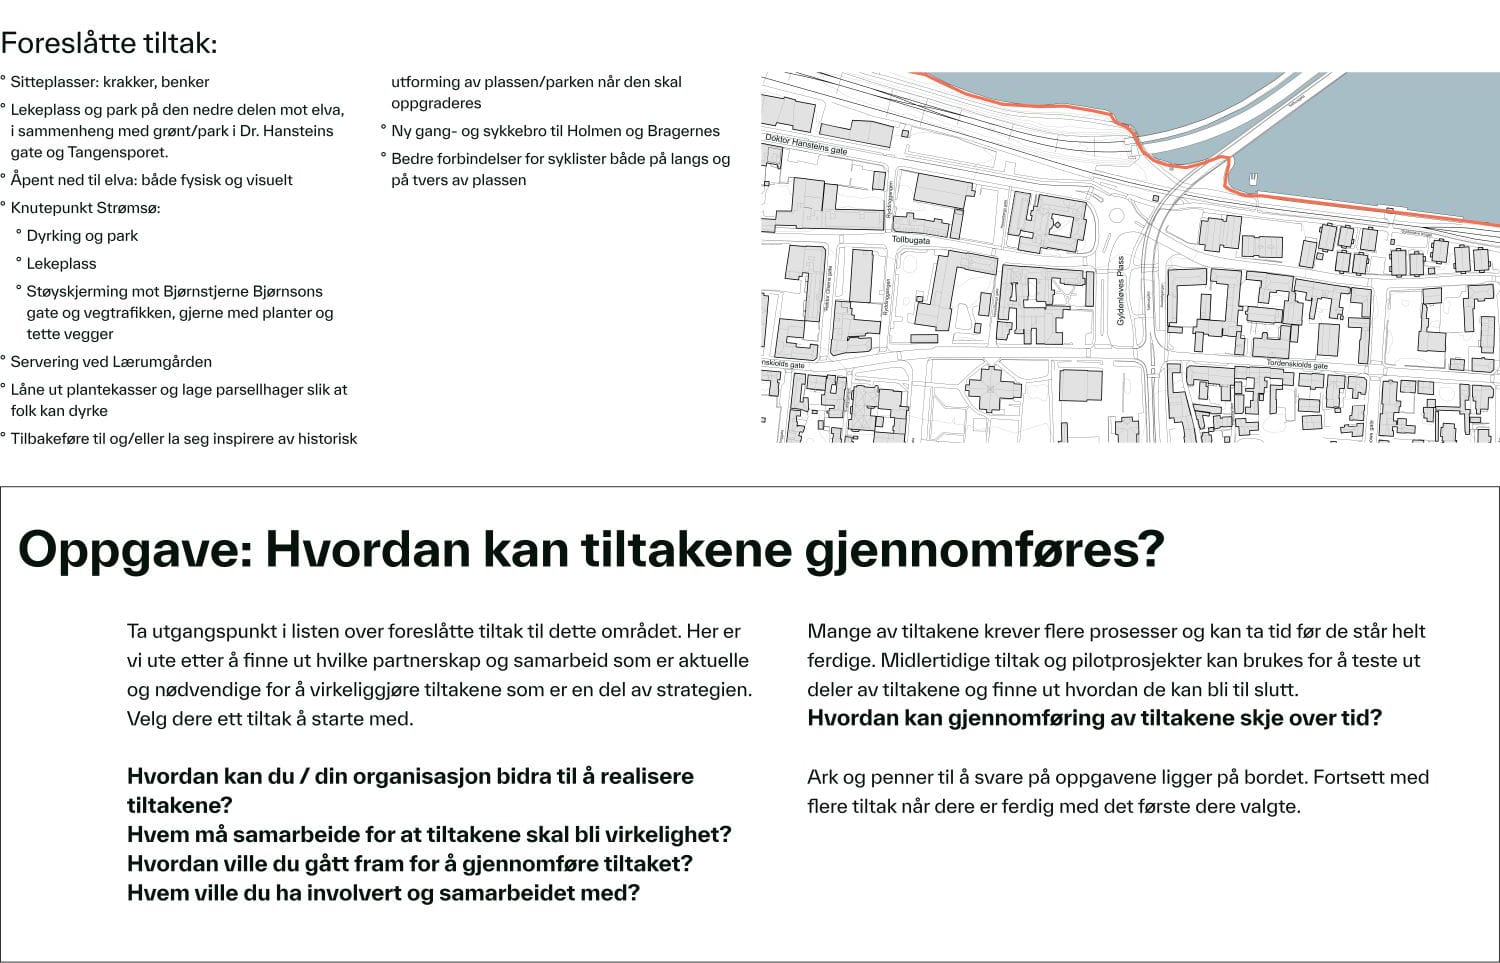 Illustrasjon med kart og tekst som viser Gyldenløves plass, tiltakene som ble foreslått der og oppgaveteksten.